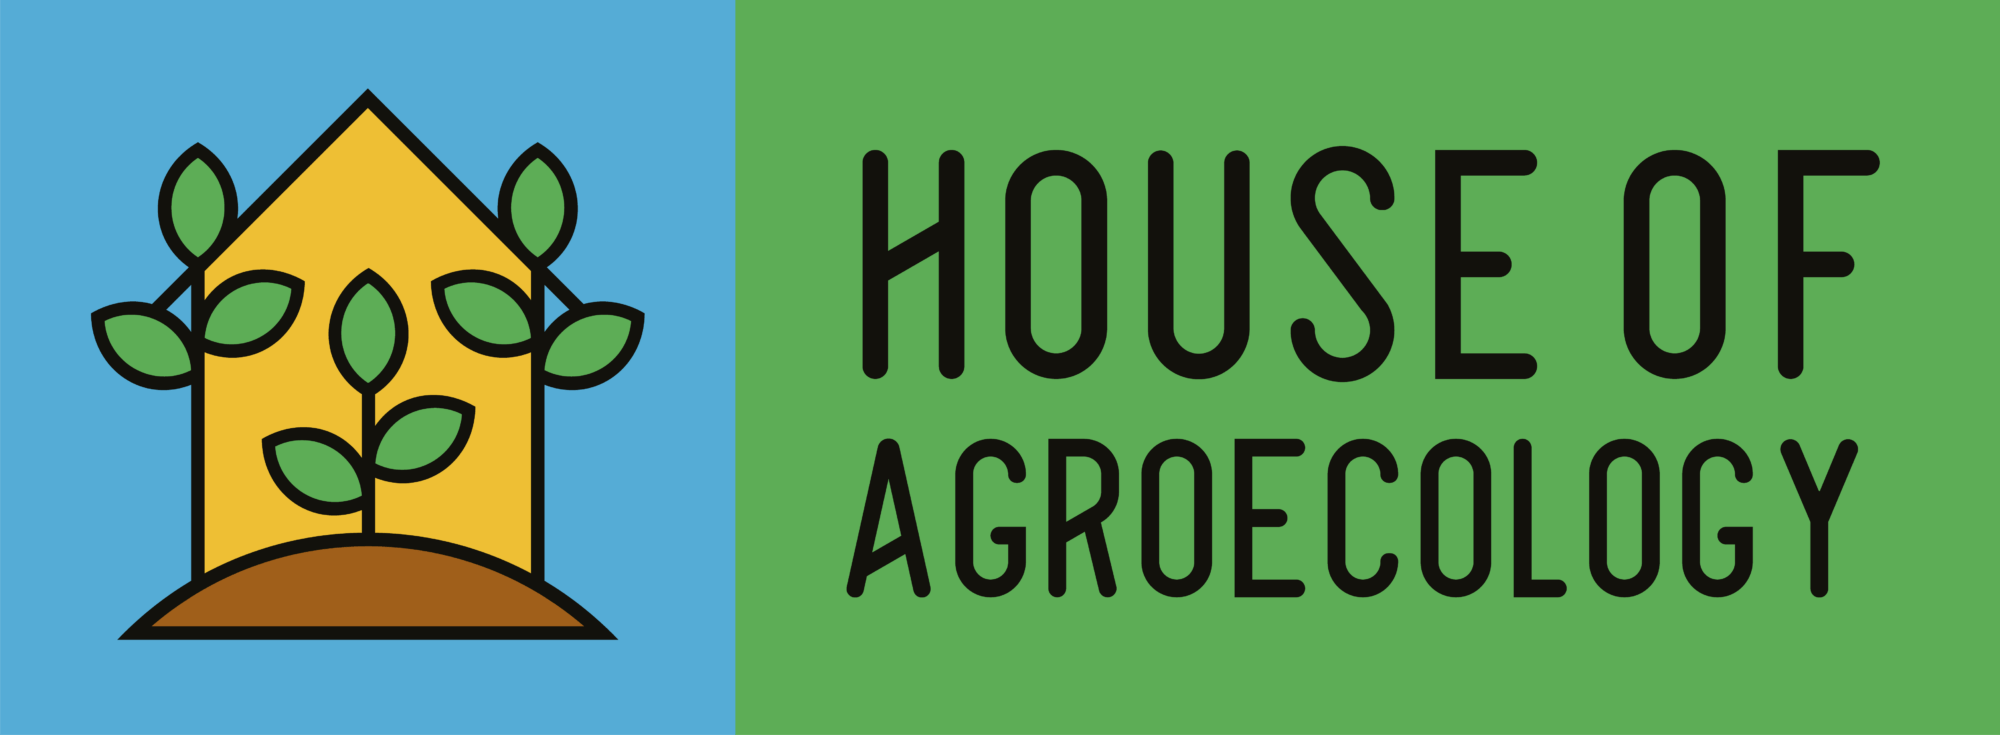 Accélérer la transition agricole et alimentaire - House of Agroecology